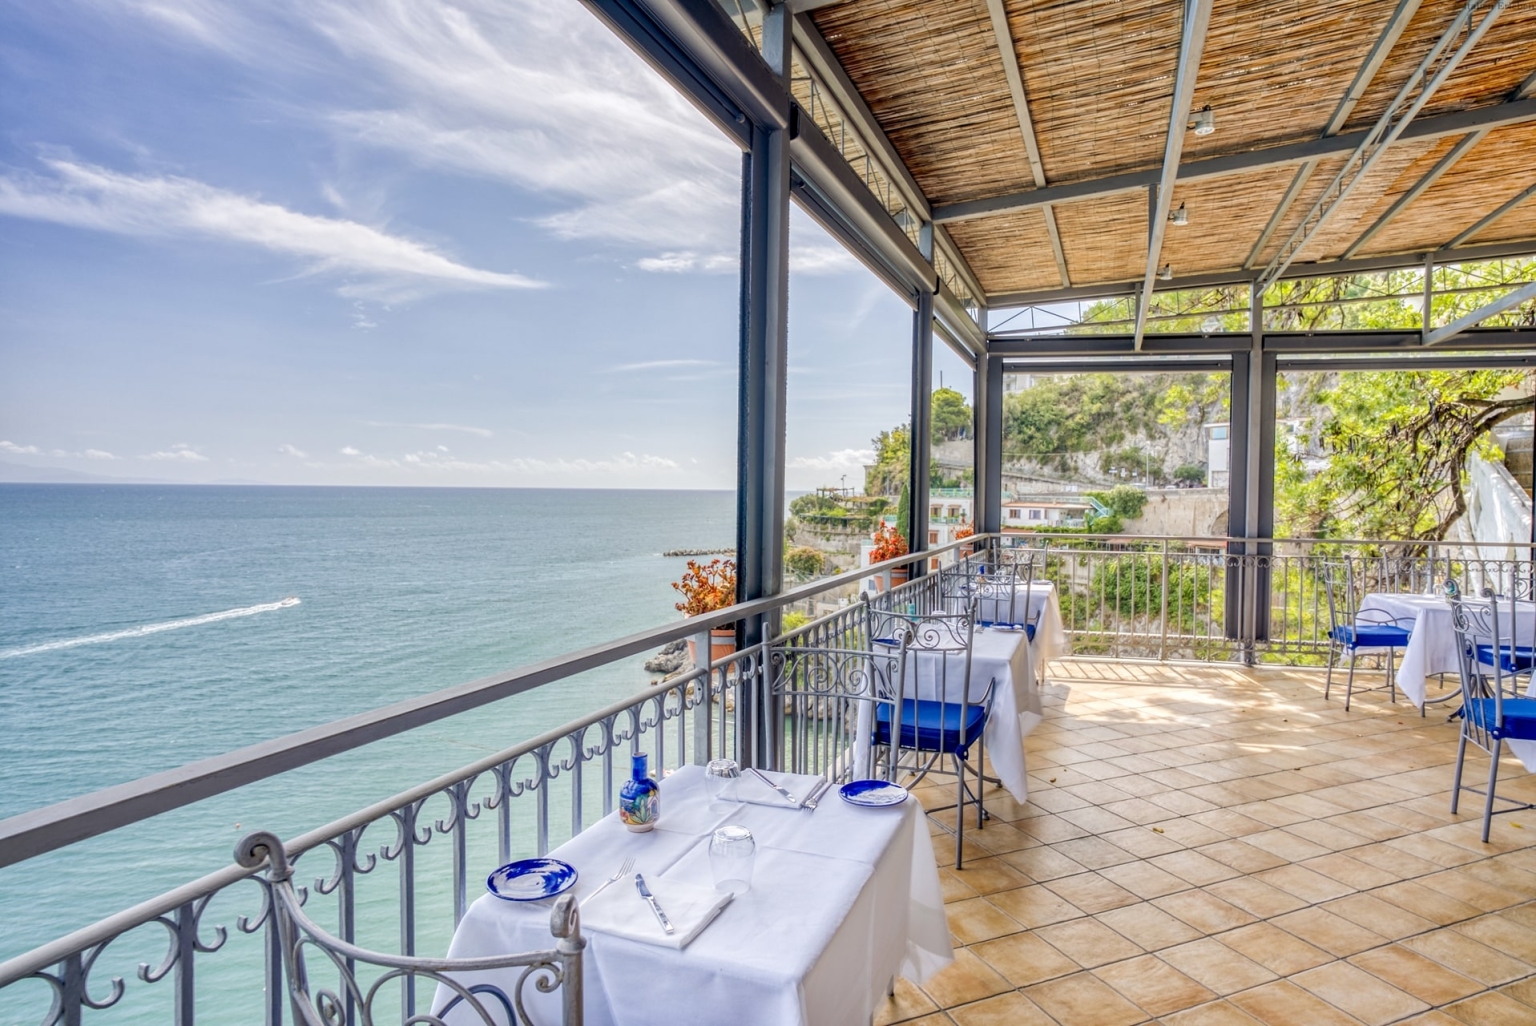 Kampanien Hotel Cetus Cetara Amalfiküste direkt am Meer Panoramalage Meerblick Terrasse Restaurant